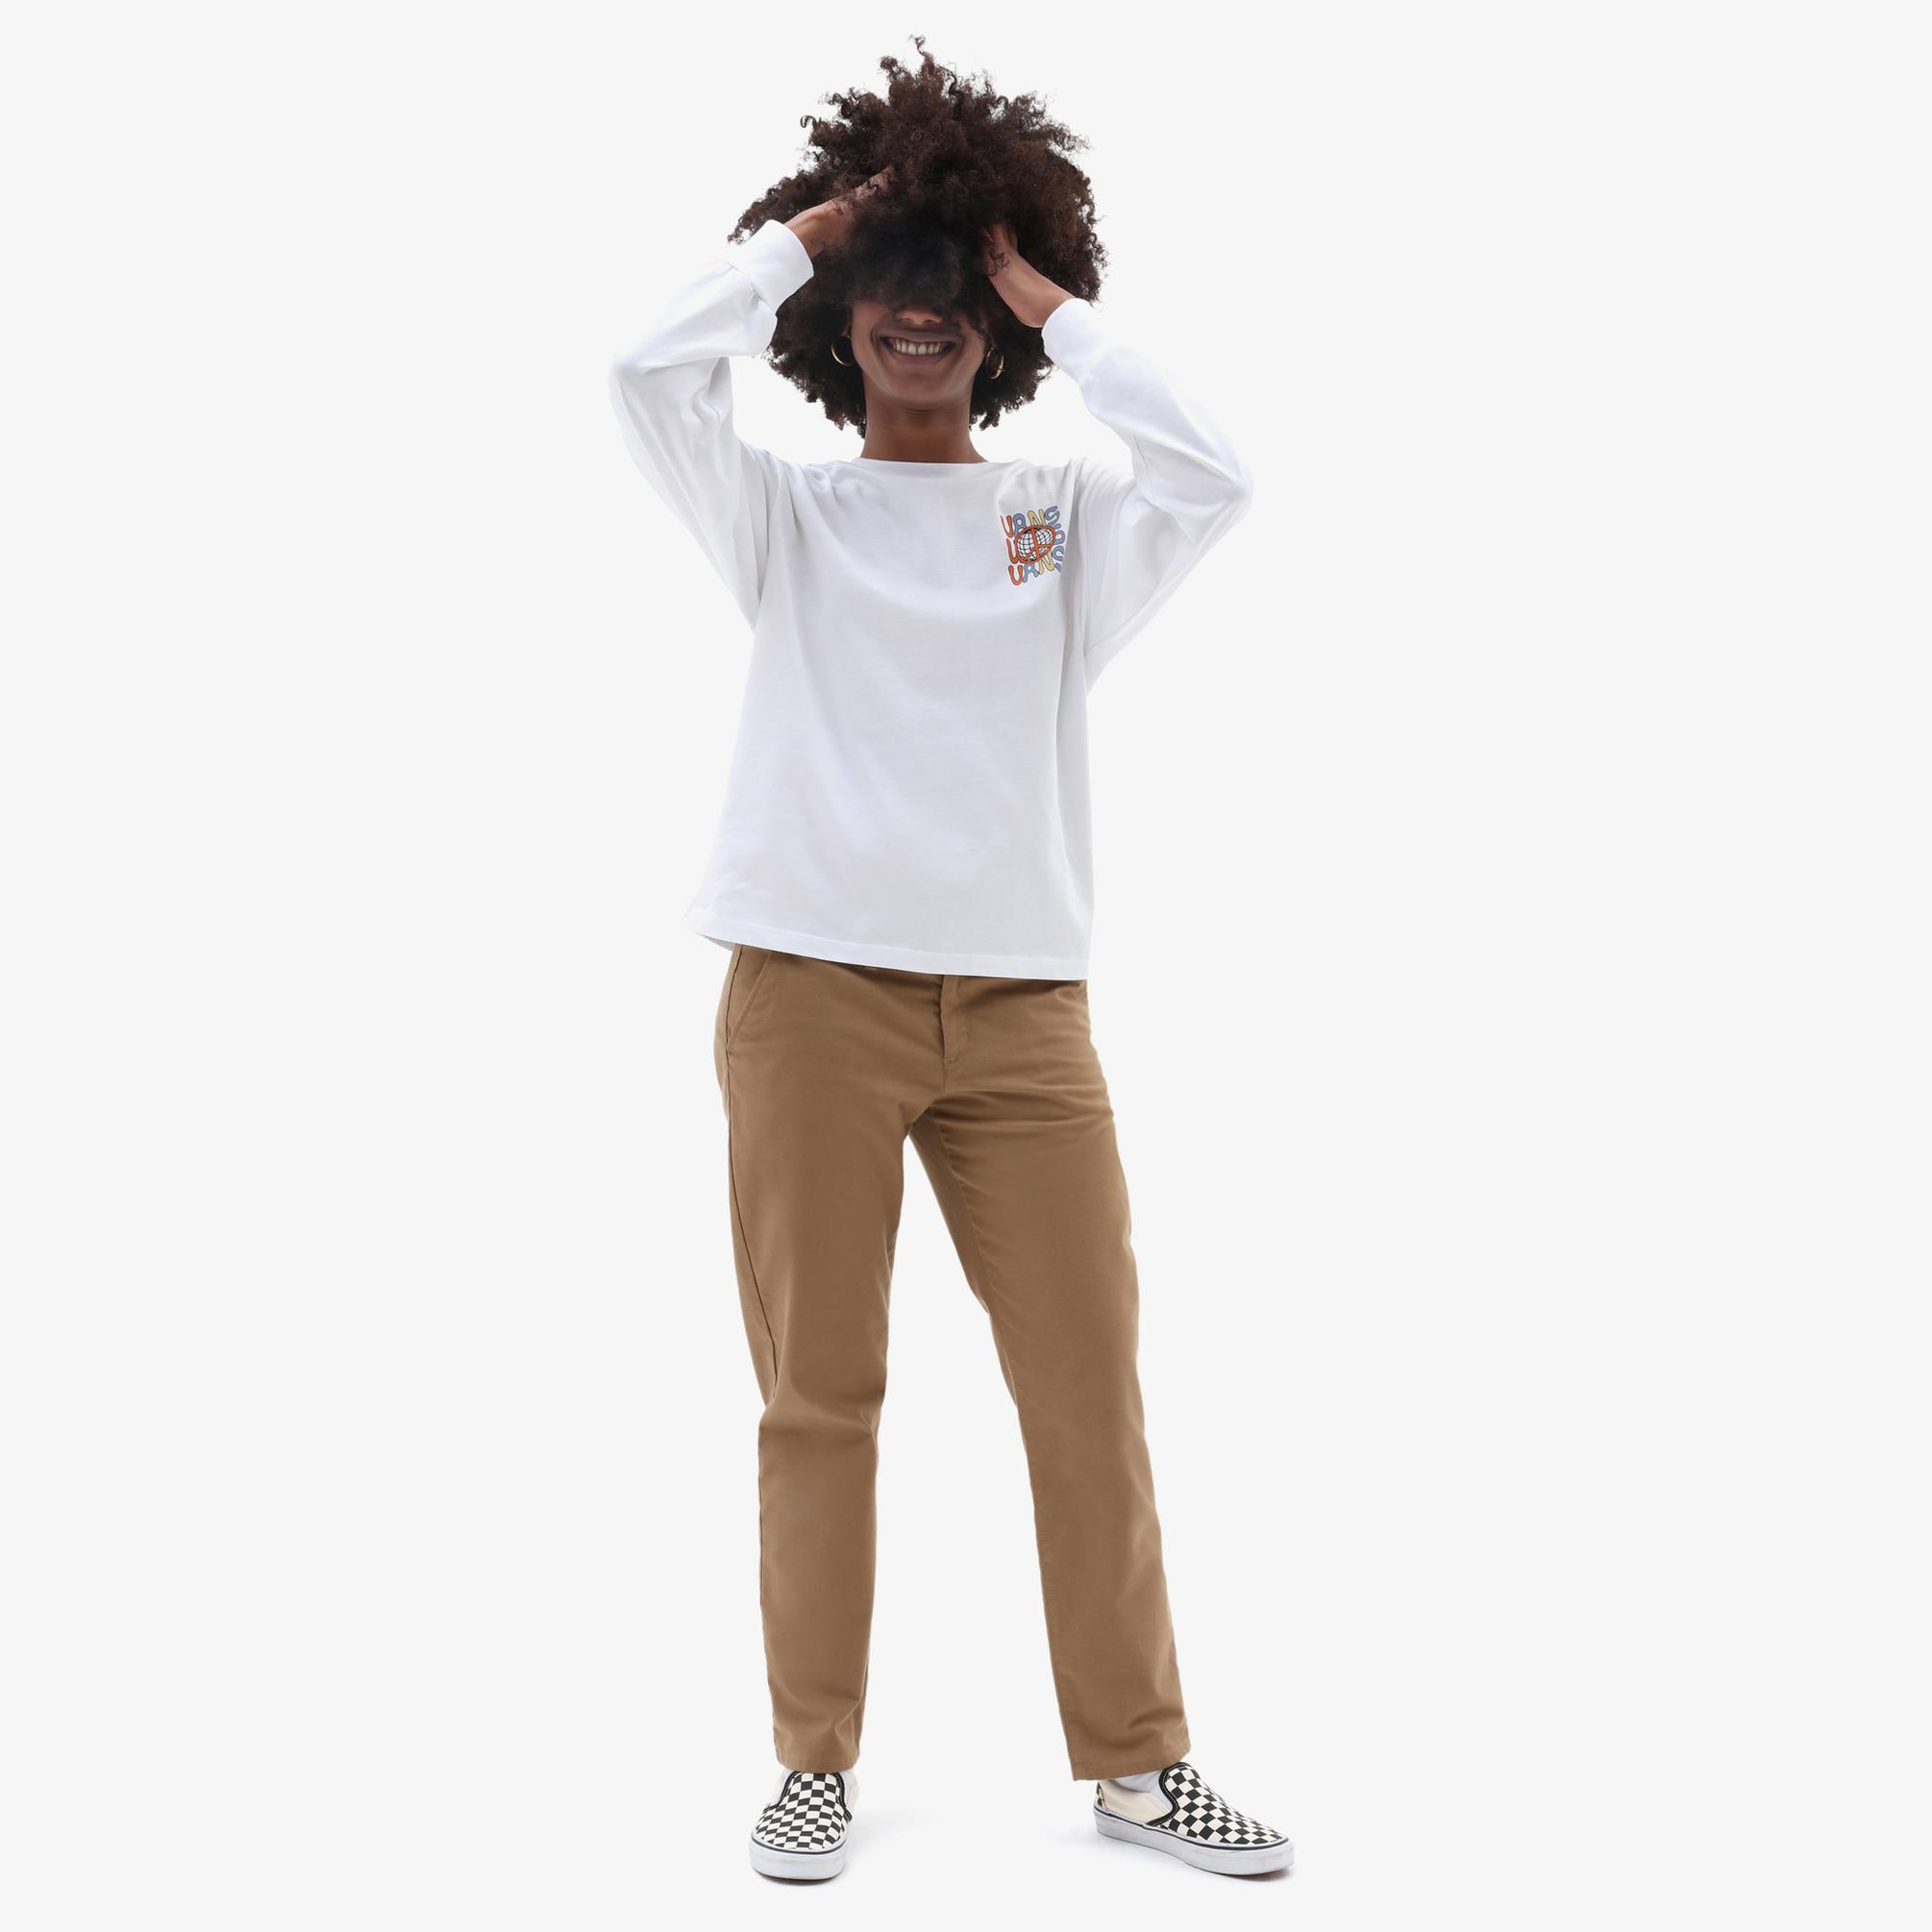  Vans Glow Bully Kadın Beyaz T-Shirt